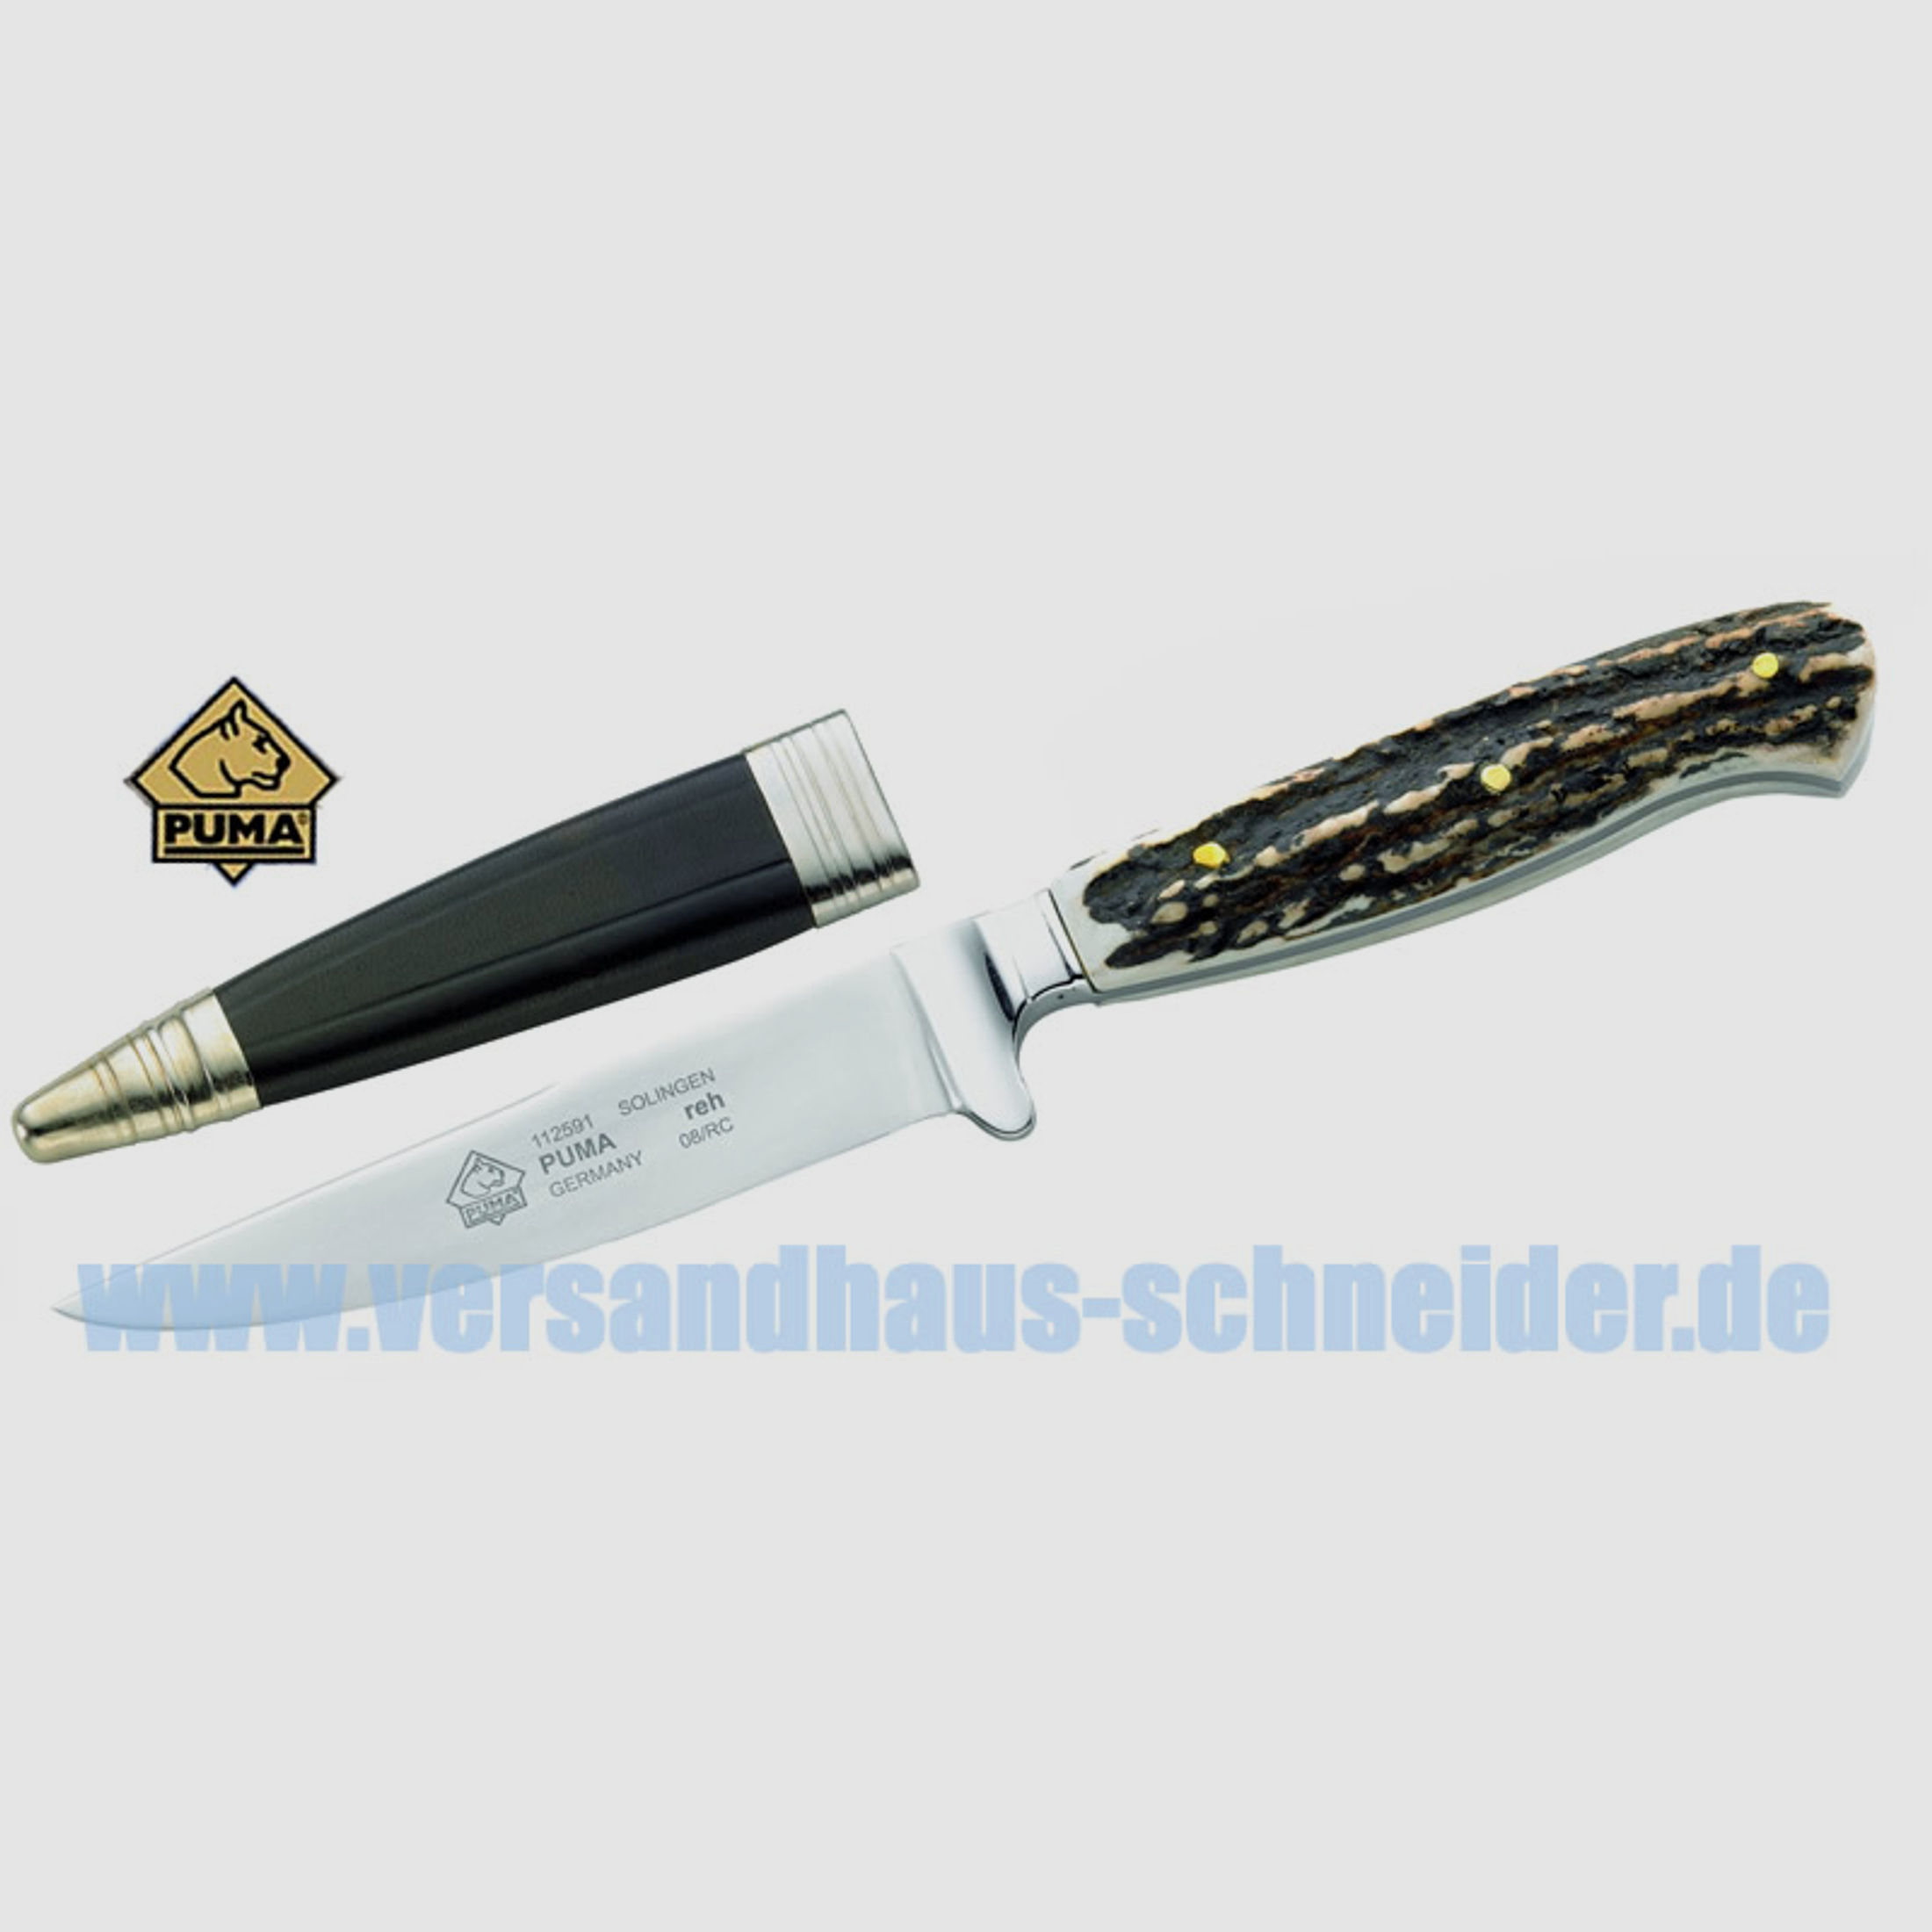 Puma Jagdmesser, Modell Reh, Stahl 1.4034, Hirschhornschalen, Lederscheide (P18)